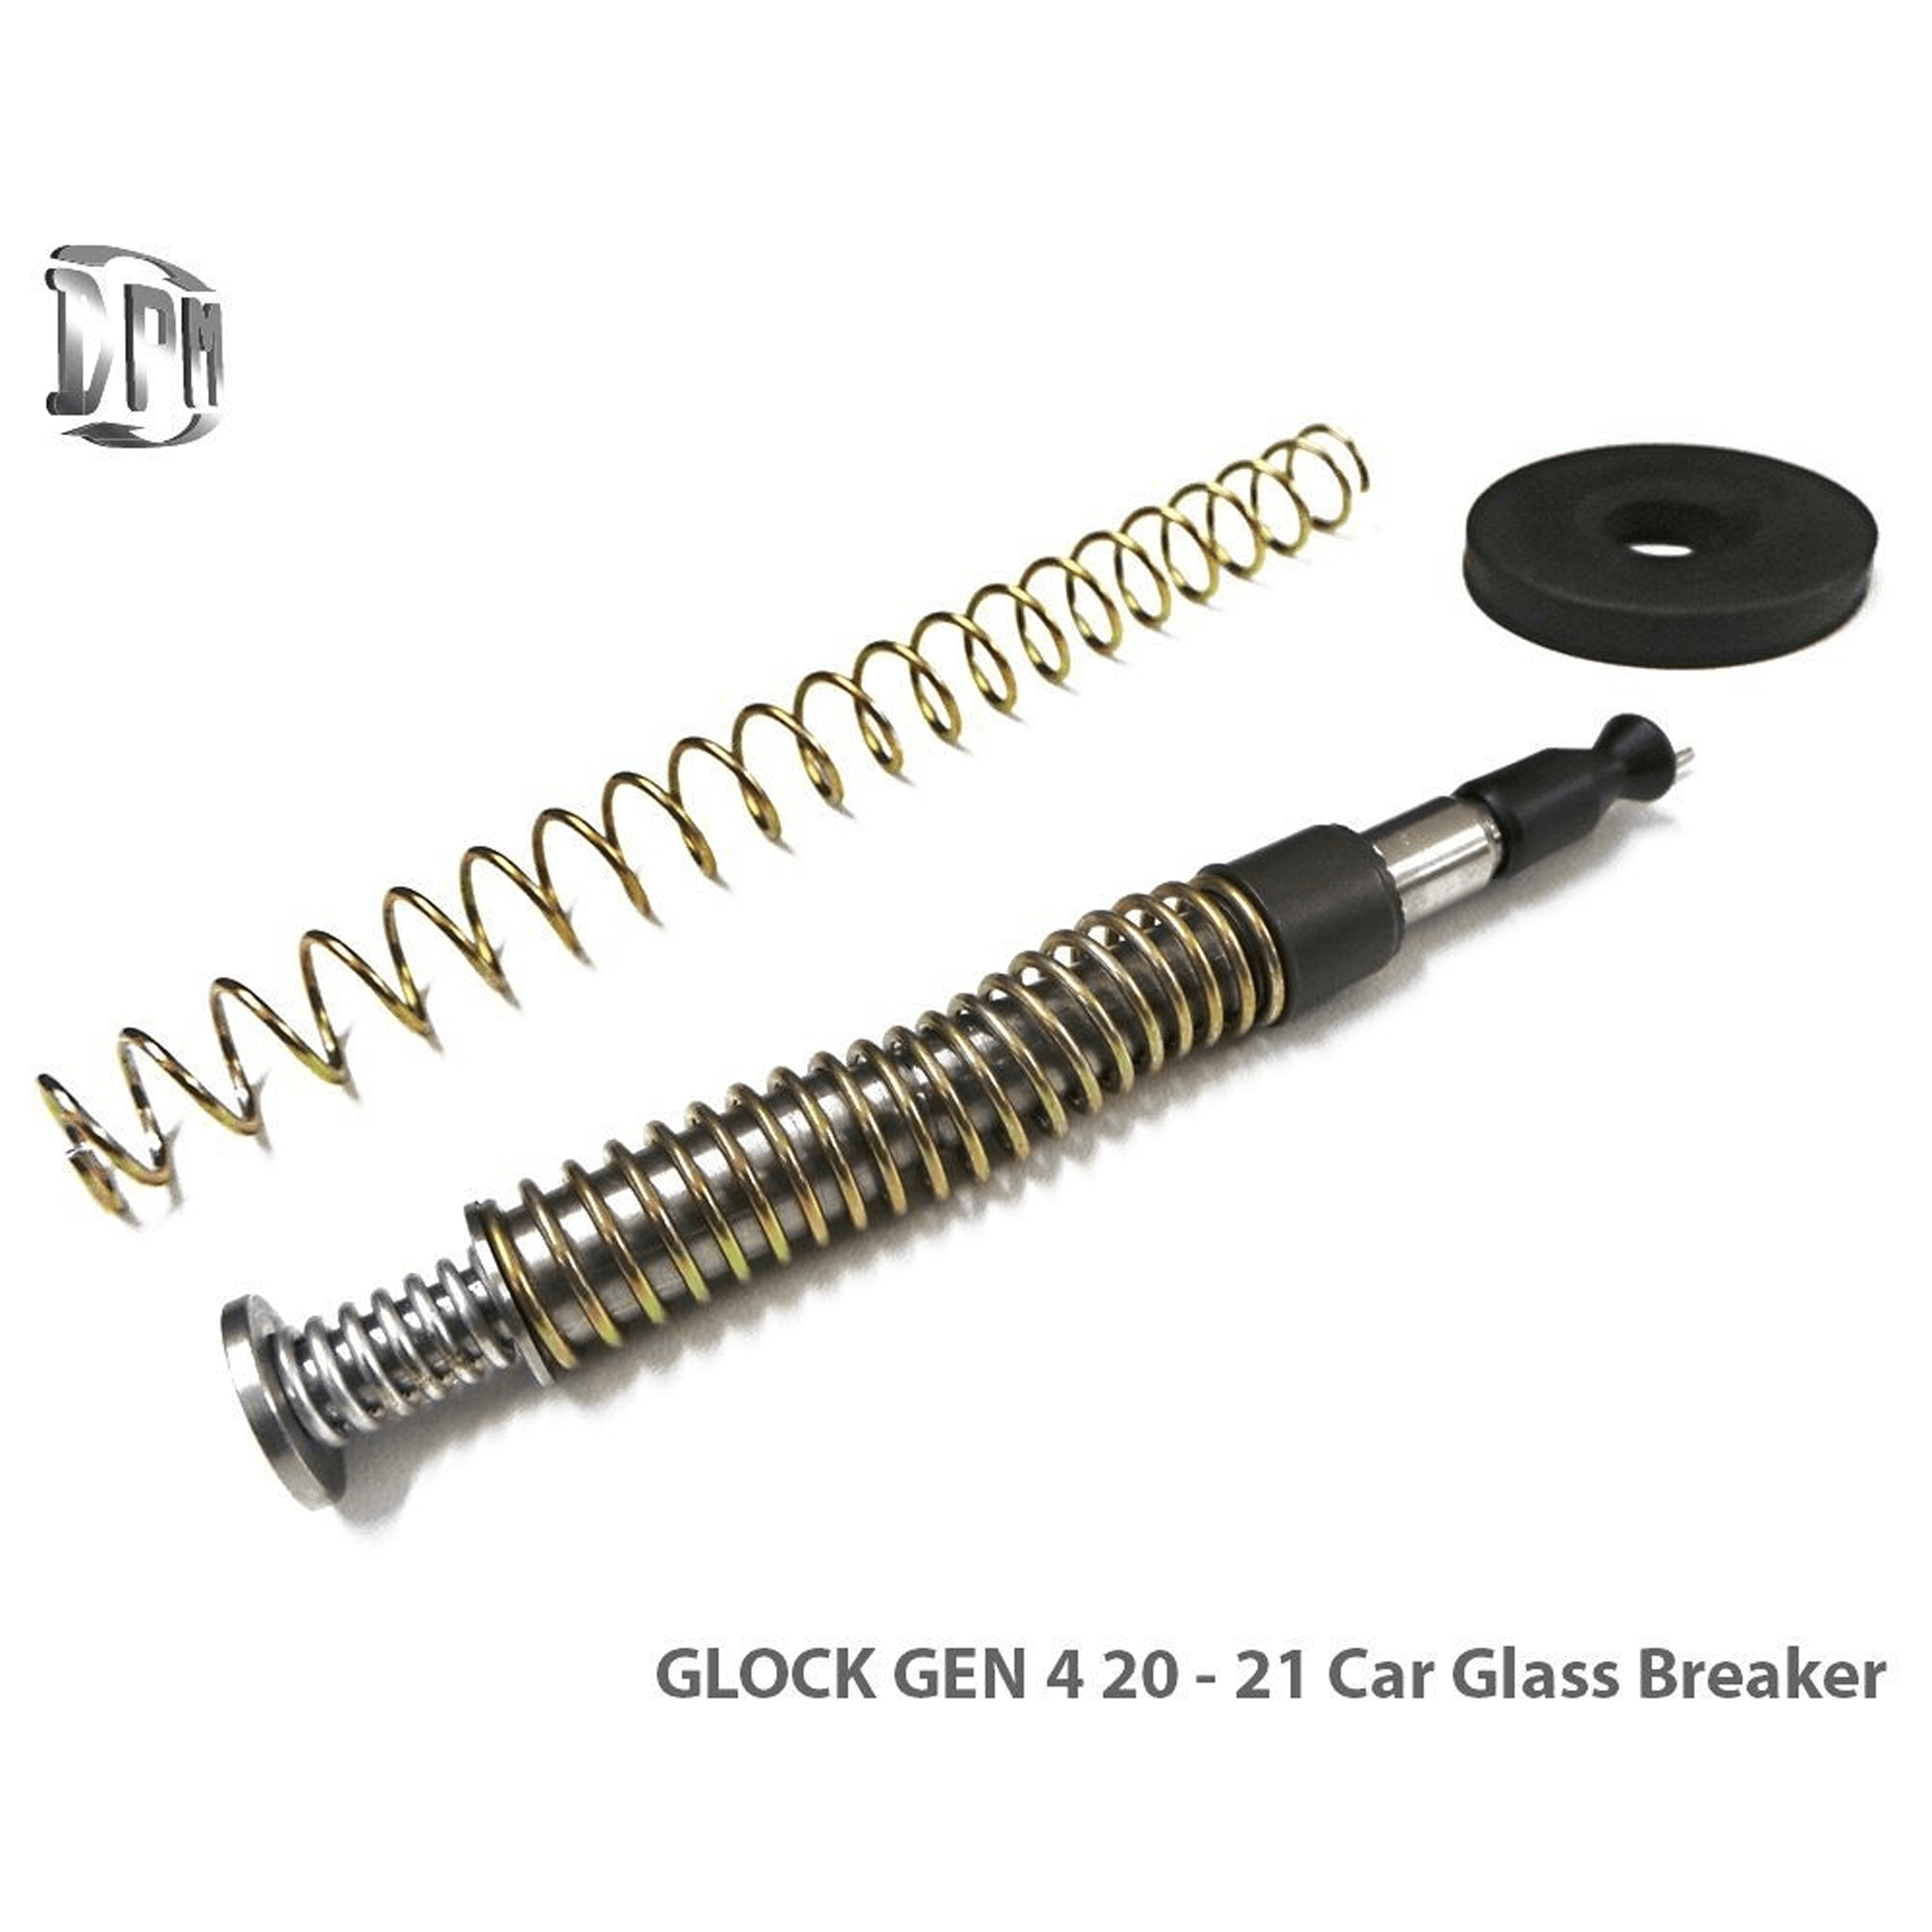 GLOCK 20, 21, 40, 41 & SF GEN 4 Car Glass Breaker